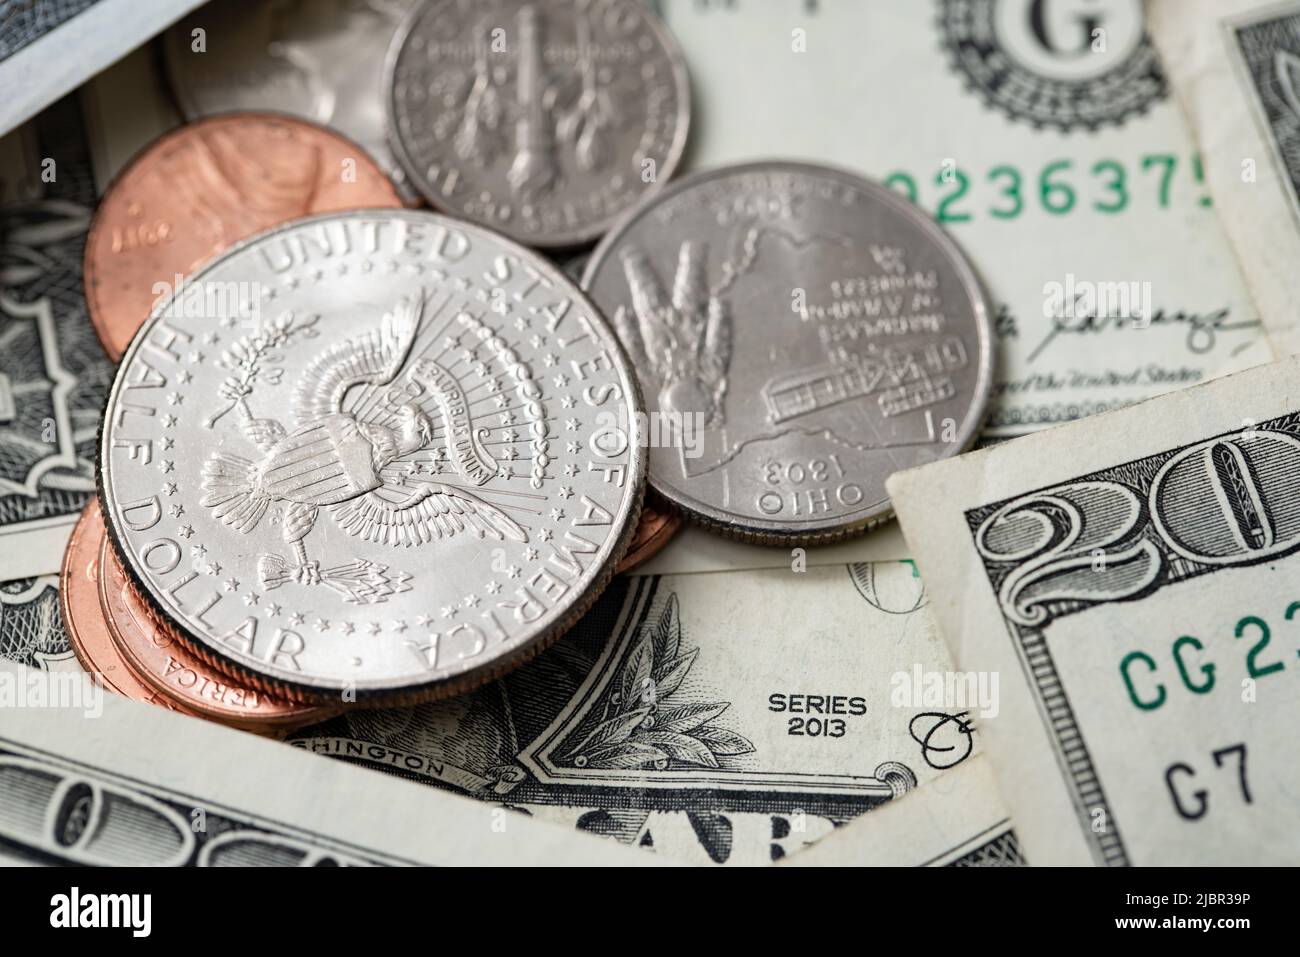 Moneda de medio dólar en monedas más pequeñas rodeadas de billetes en dólares. Economía Y moneda DE EE.UU. Montón de dinero en efectivo Foto de stock